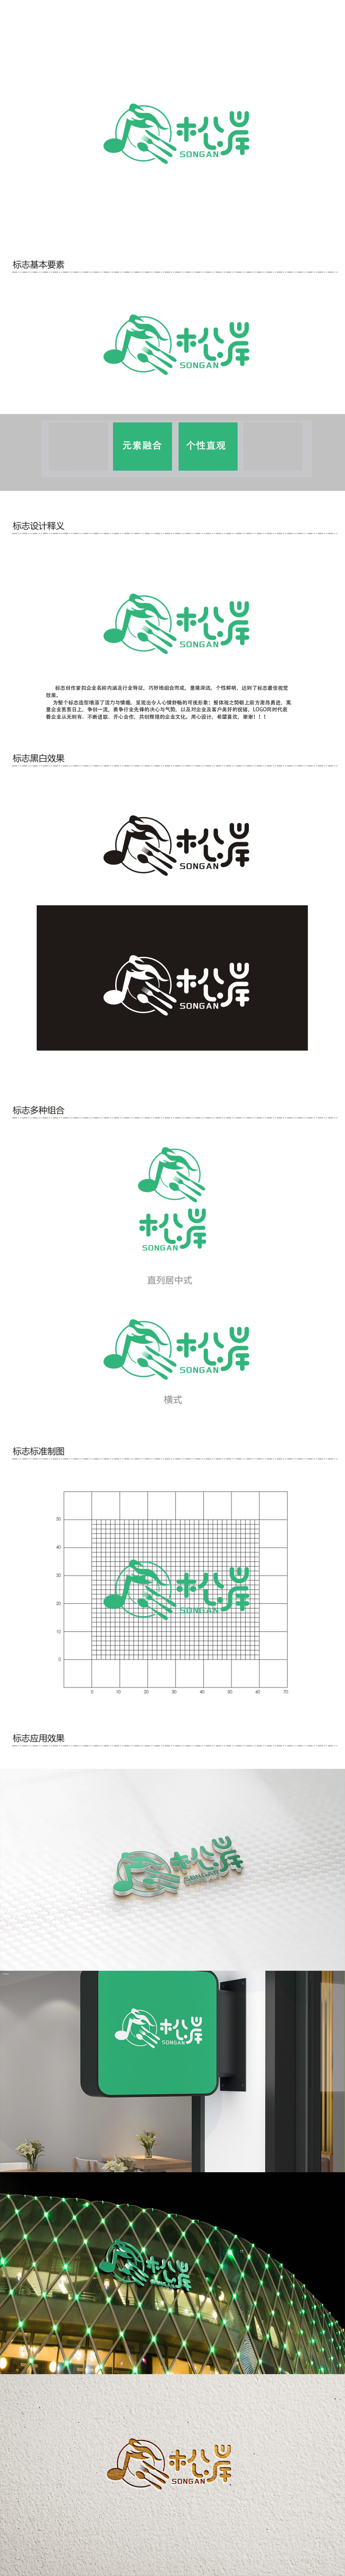 秦晓东的松岸logo设计